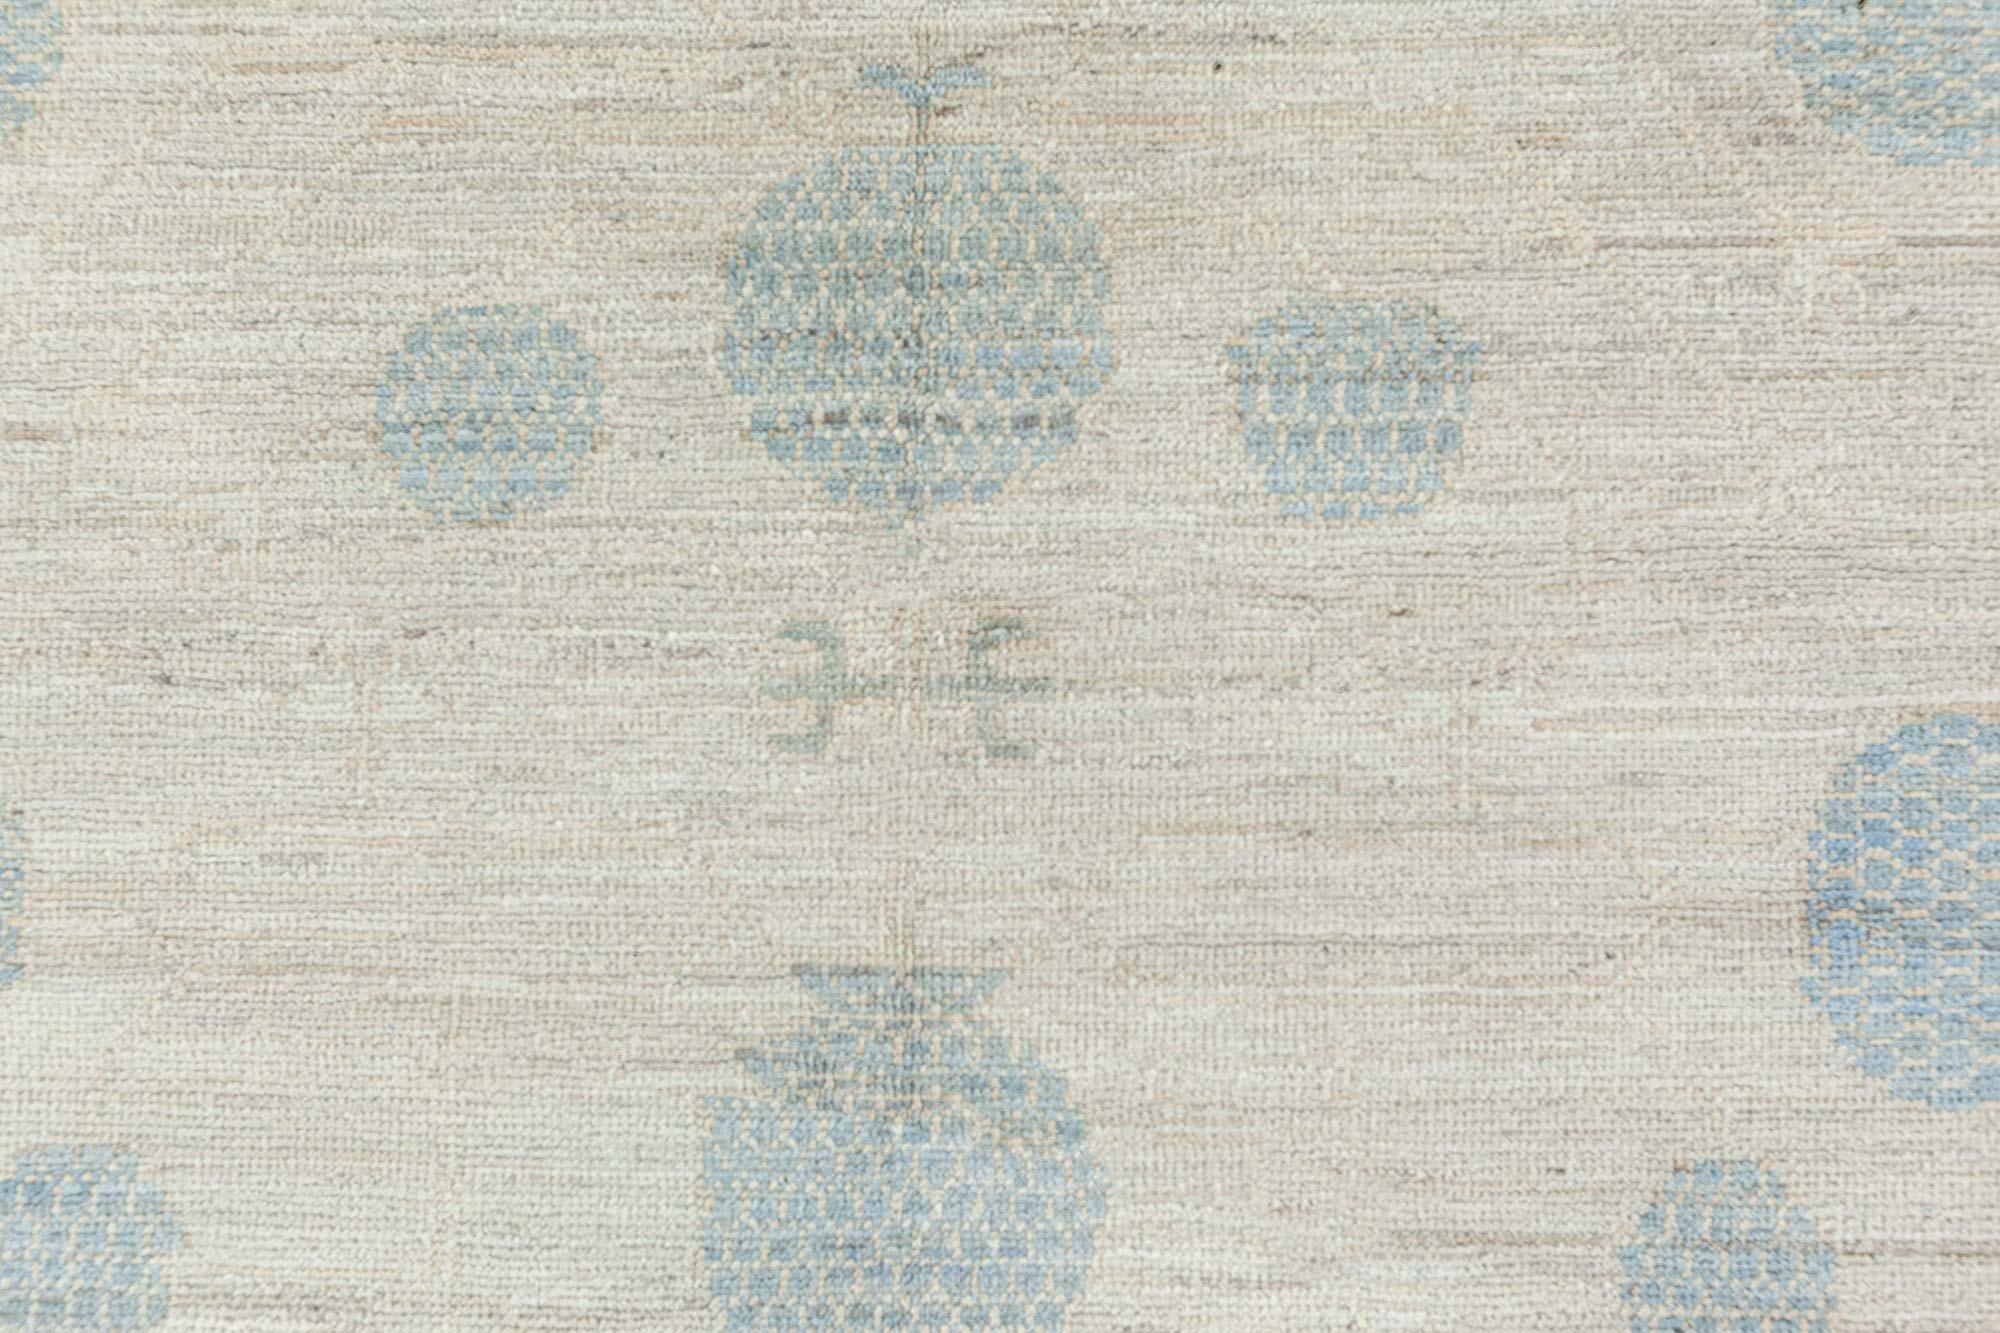 Large modern Samarkand rug in beige and blue by Doris Leslie Blau
Size: 17'2